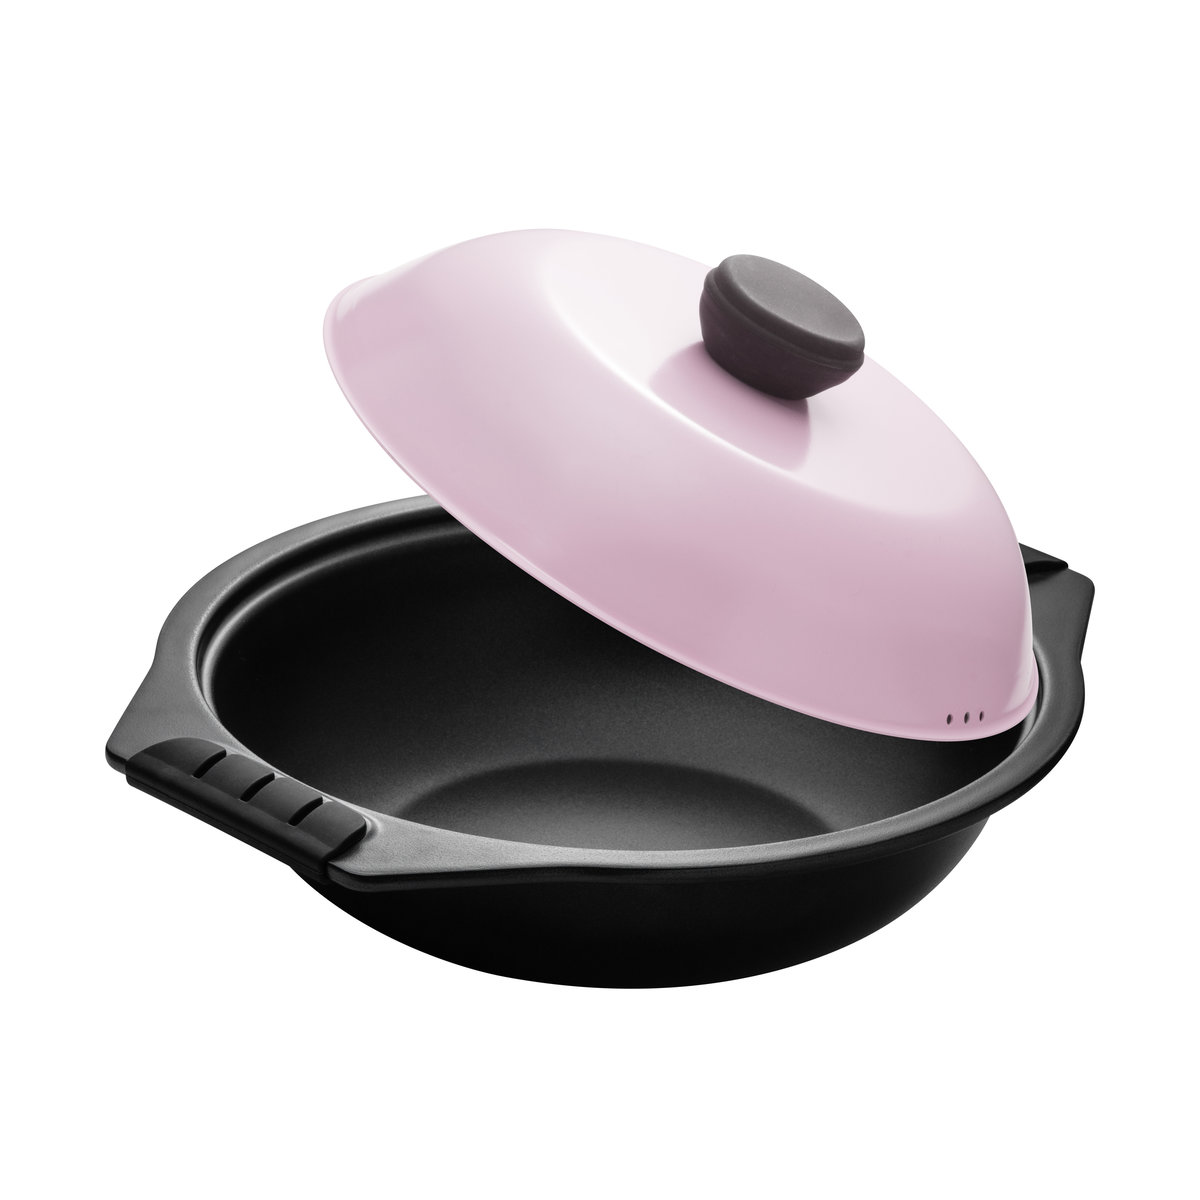 天上野| 鐵砂鍋(28Cm) (粉紅色蓋) | 顏色: 粉紅色| Hktvmall 香港最大網購平台